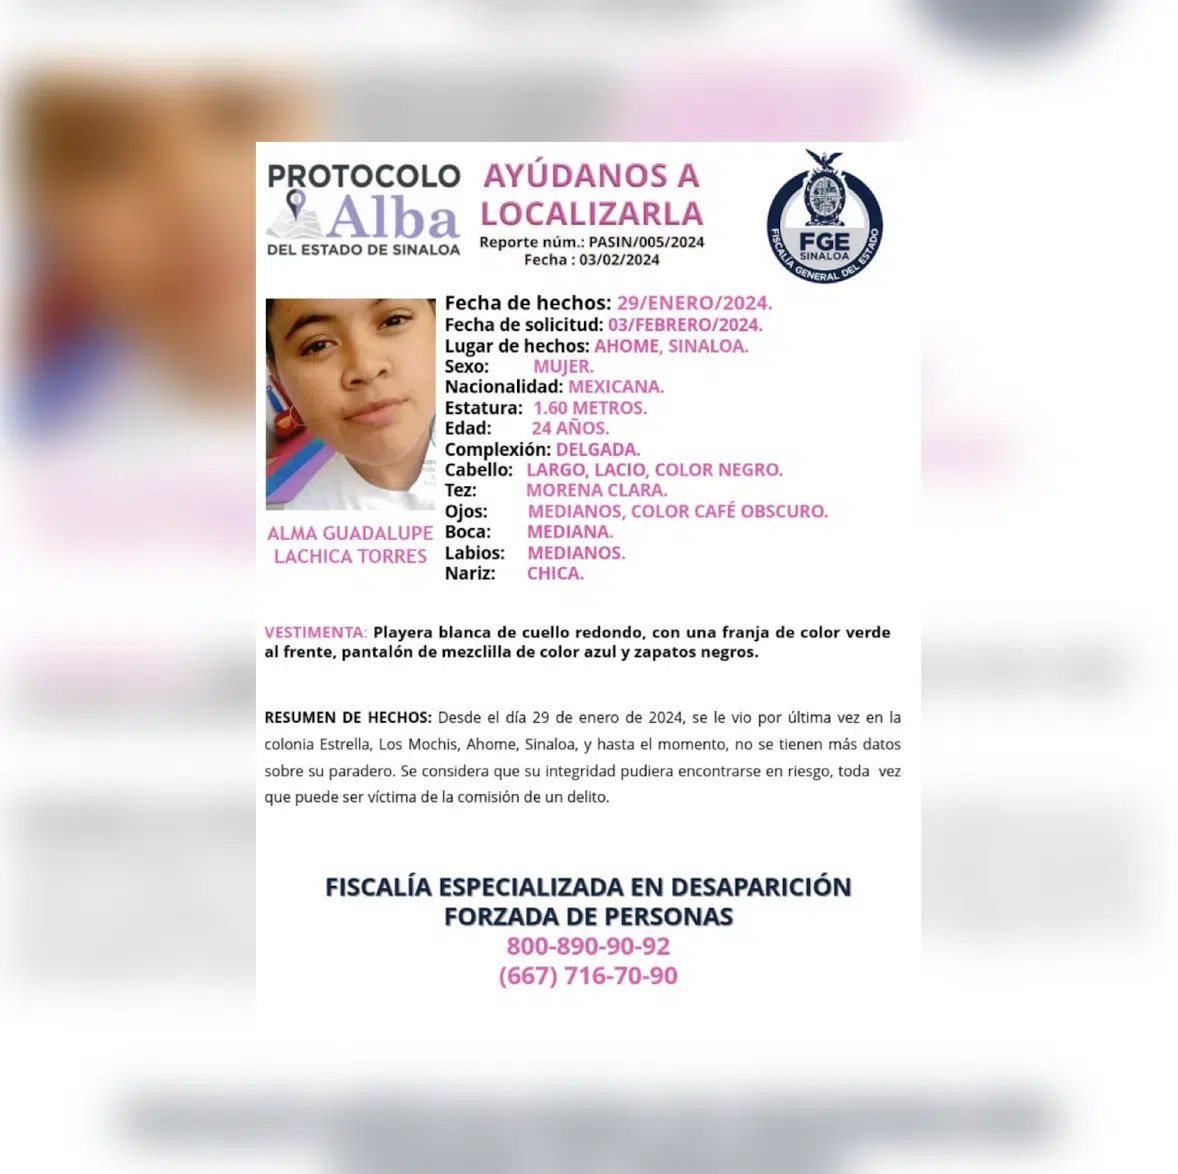 Ficha de búsqueda de Alma Guadalupe Lachica Torres tras su desaparición en Los Mochis